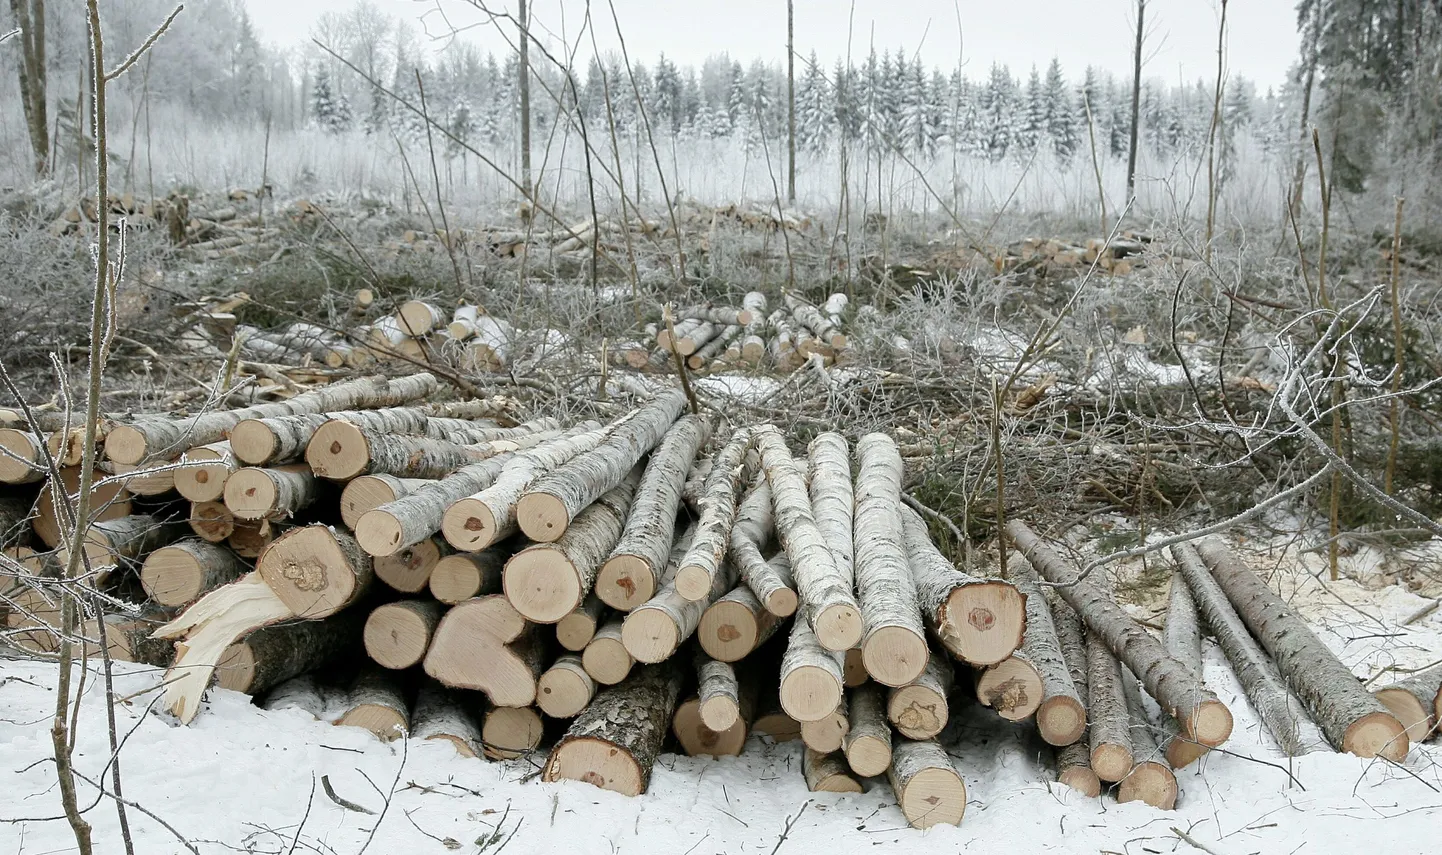 Kui metsaomanik otsustab raieküpseks saanud metsaosas raiet teha, on laias laastus kolm võimalust: teha raietööde korraldamist ja metsamaterjali müüki iseseisvalt, müüa raieõiguse kokkuleppehinnaga kasvava metsa väärtuse alusel või müüa raieõigust metsamaterjali väljatuleku alusel.